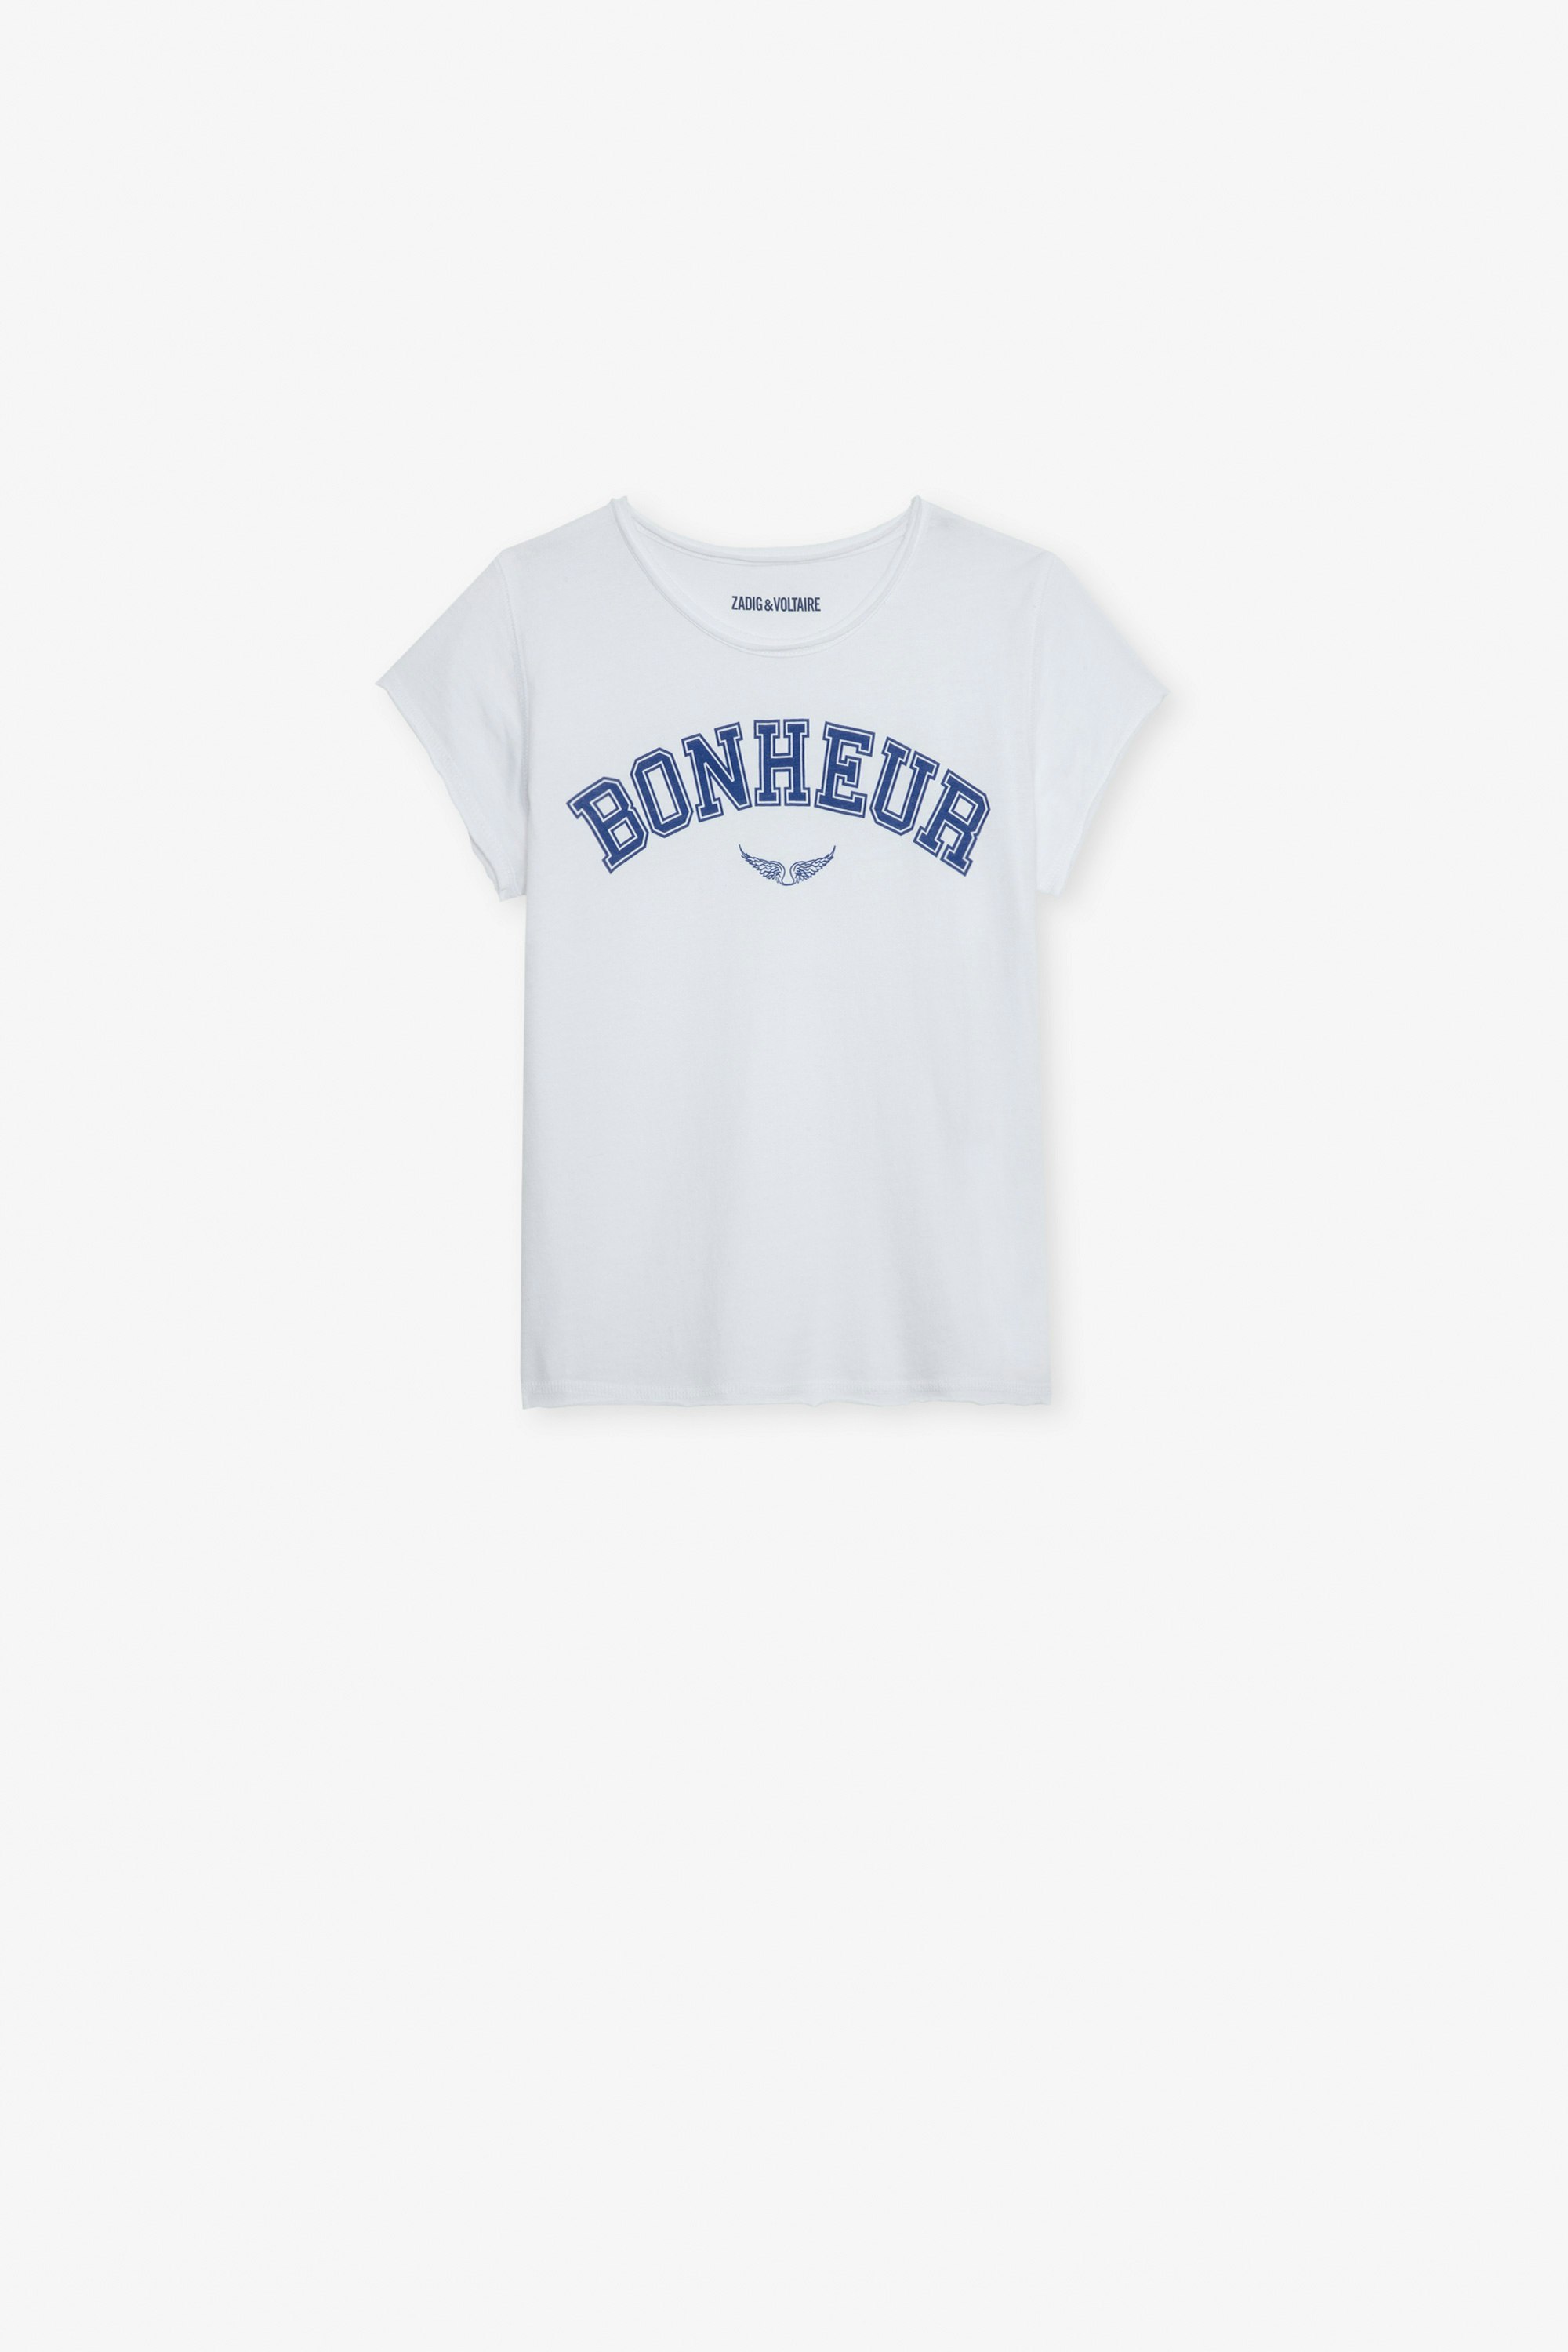 T-Shirt Amber für Mädchen - T-Shirt mit kurzen Ärmeln aus weißer Jersey-Baumwolle mit dem Schriftzug „Bonheur“ für Mädchen.